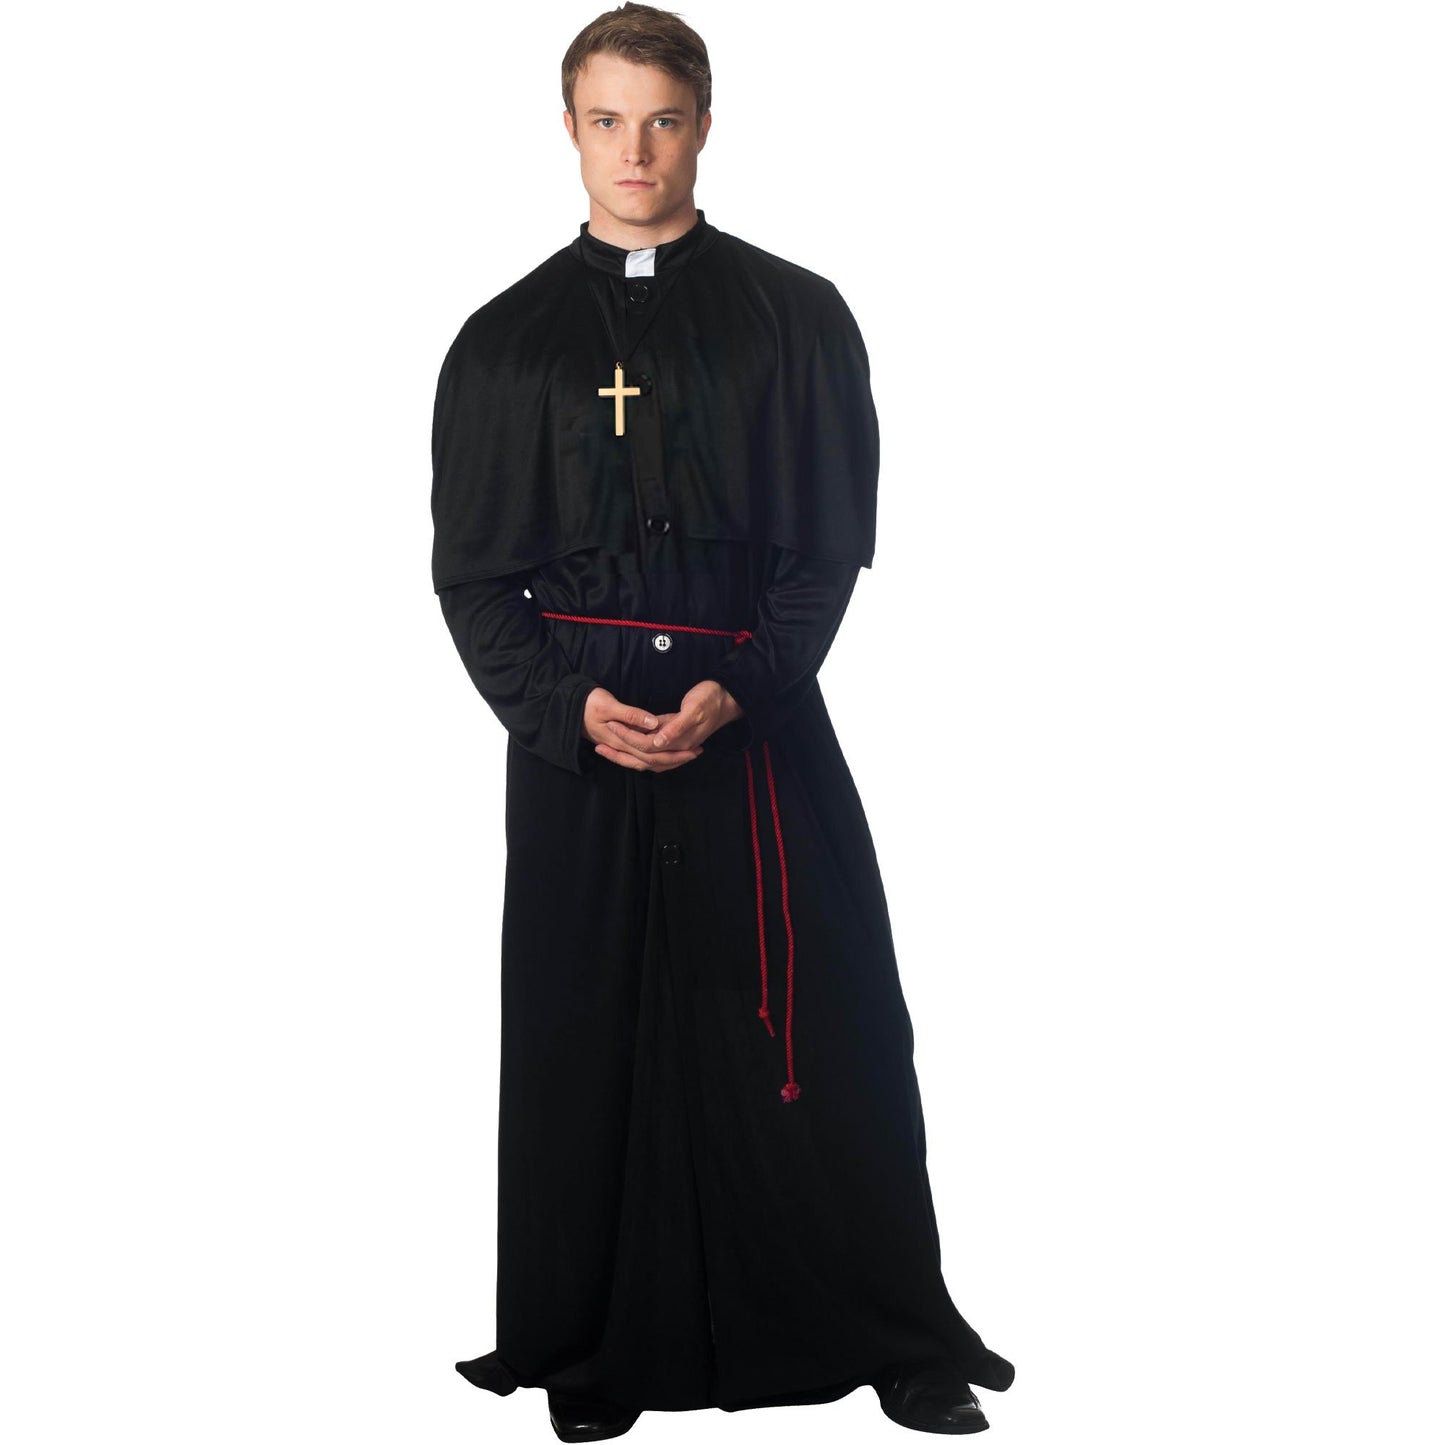 Costume Holy-er Than Thou Size Medium to Large